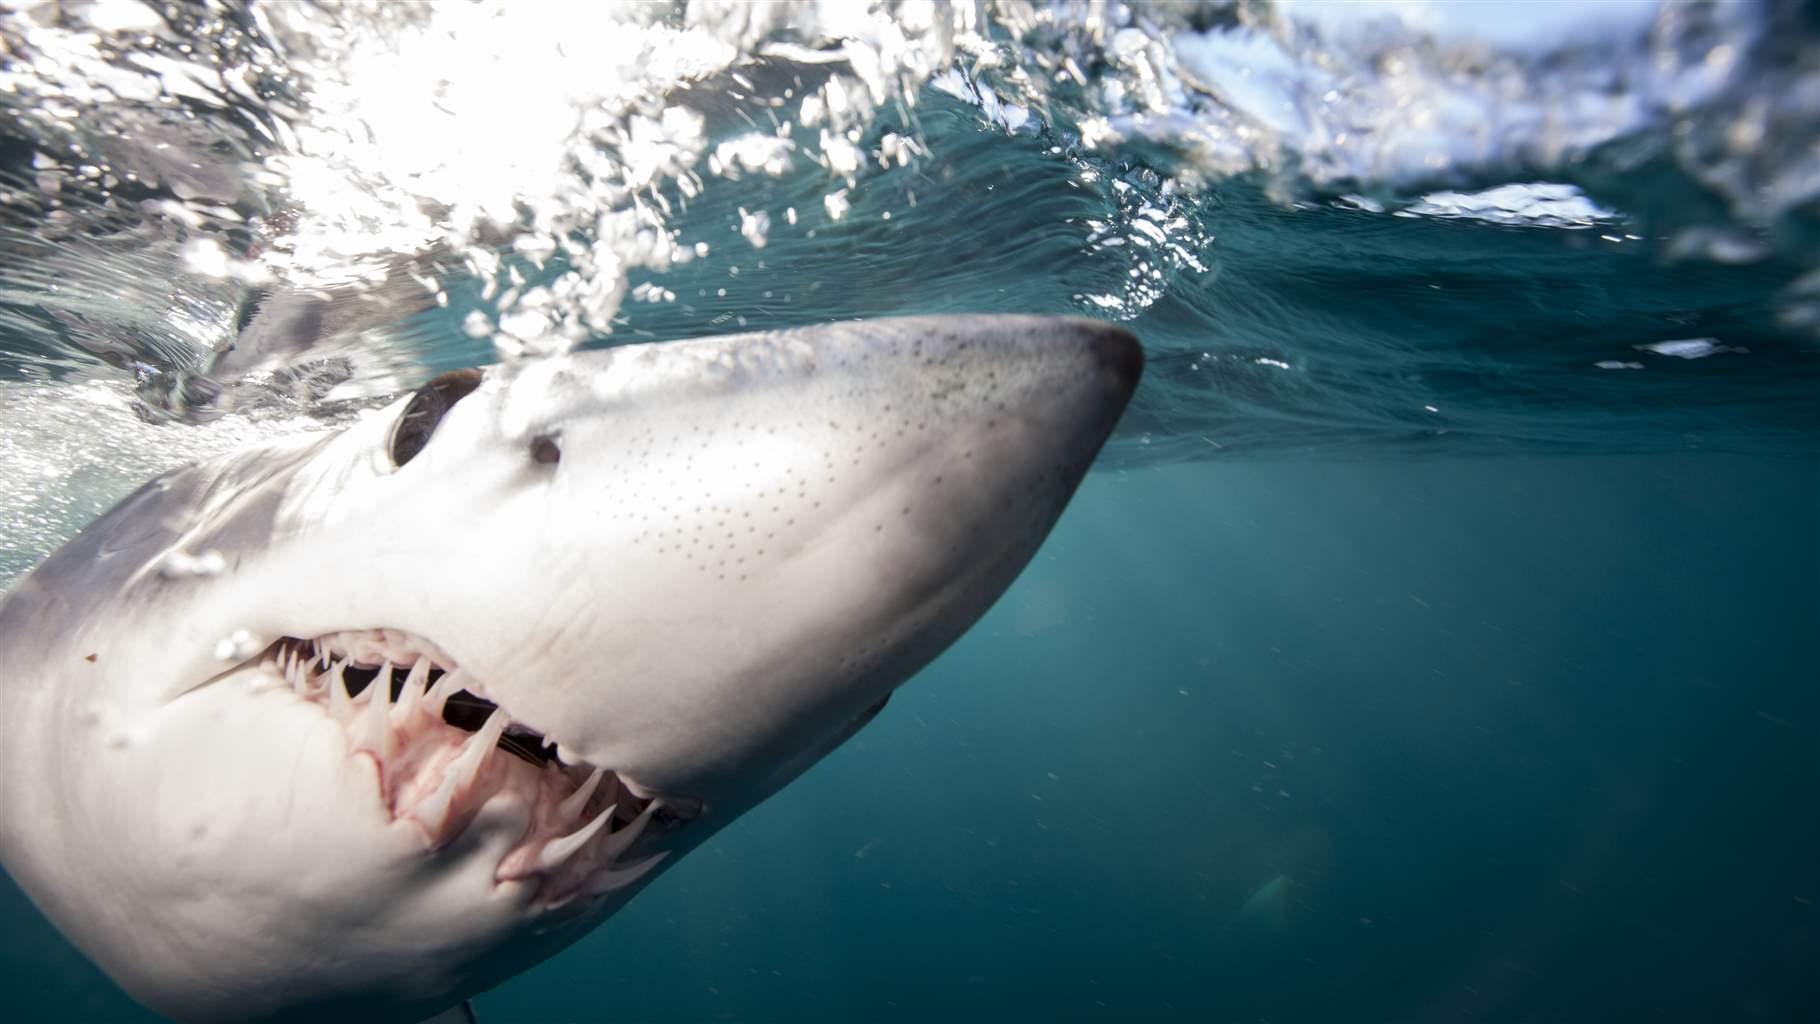 Protect Endangered Shortfin Mako Sharks .pewtrusts.org